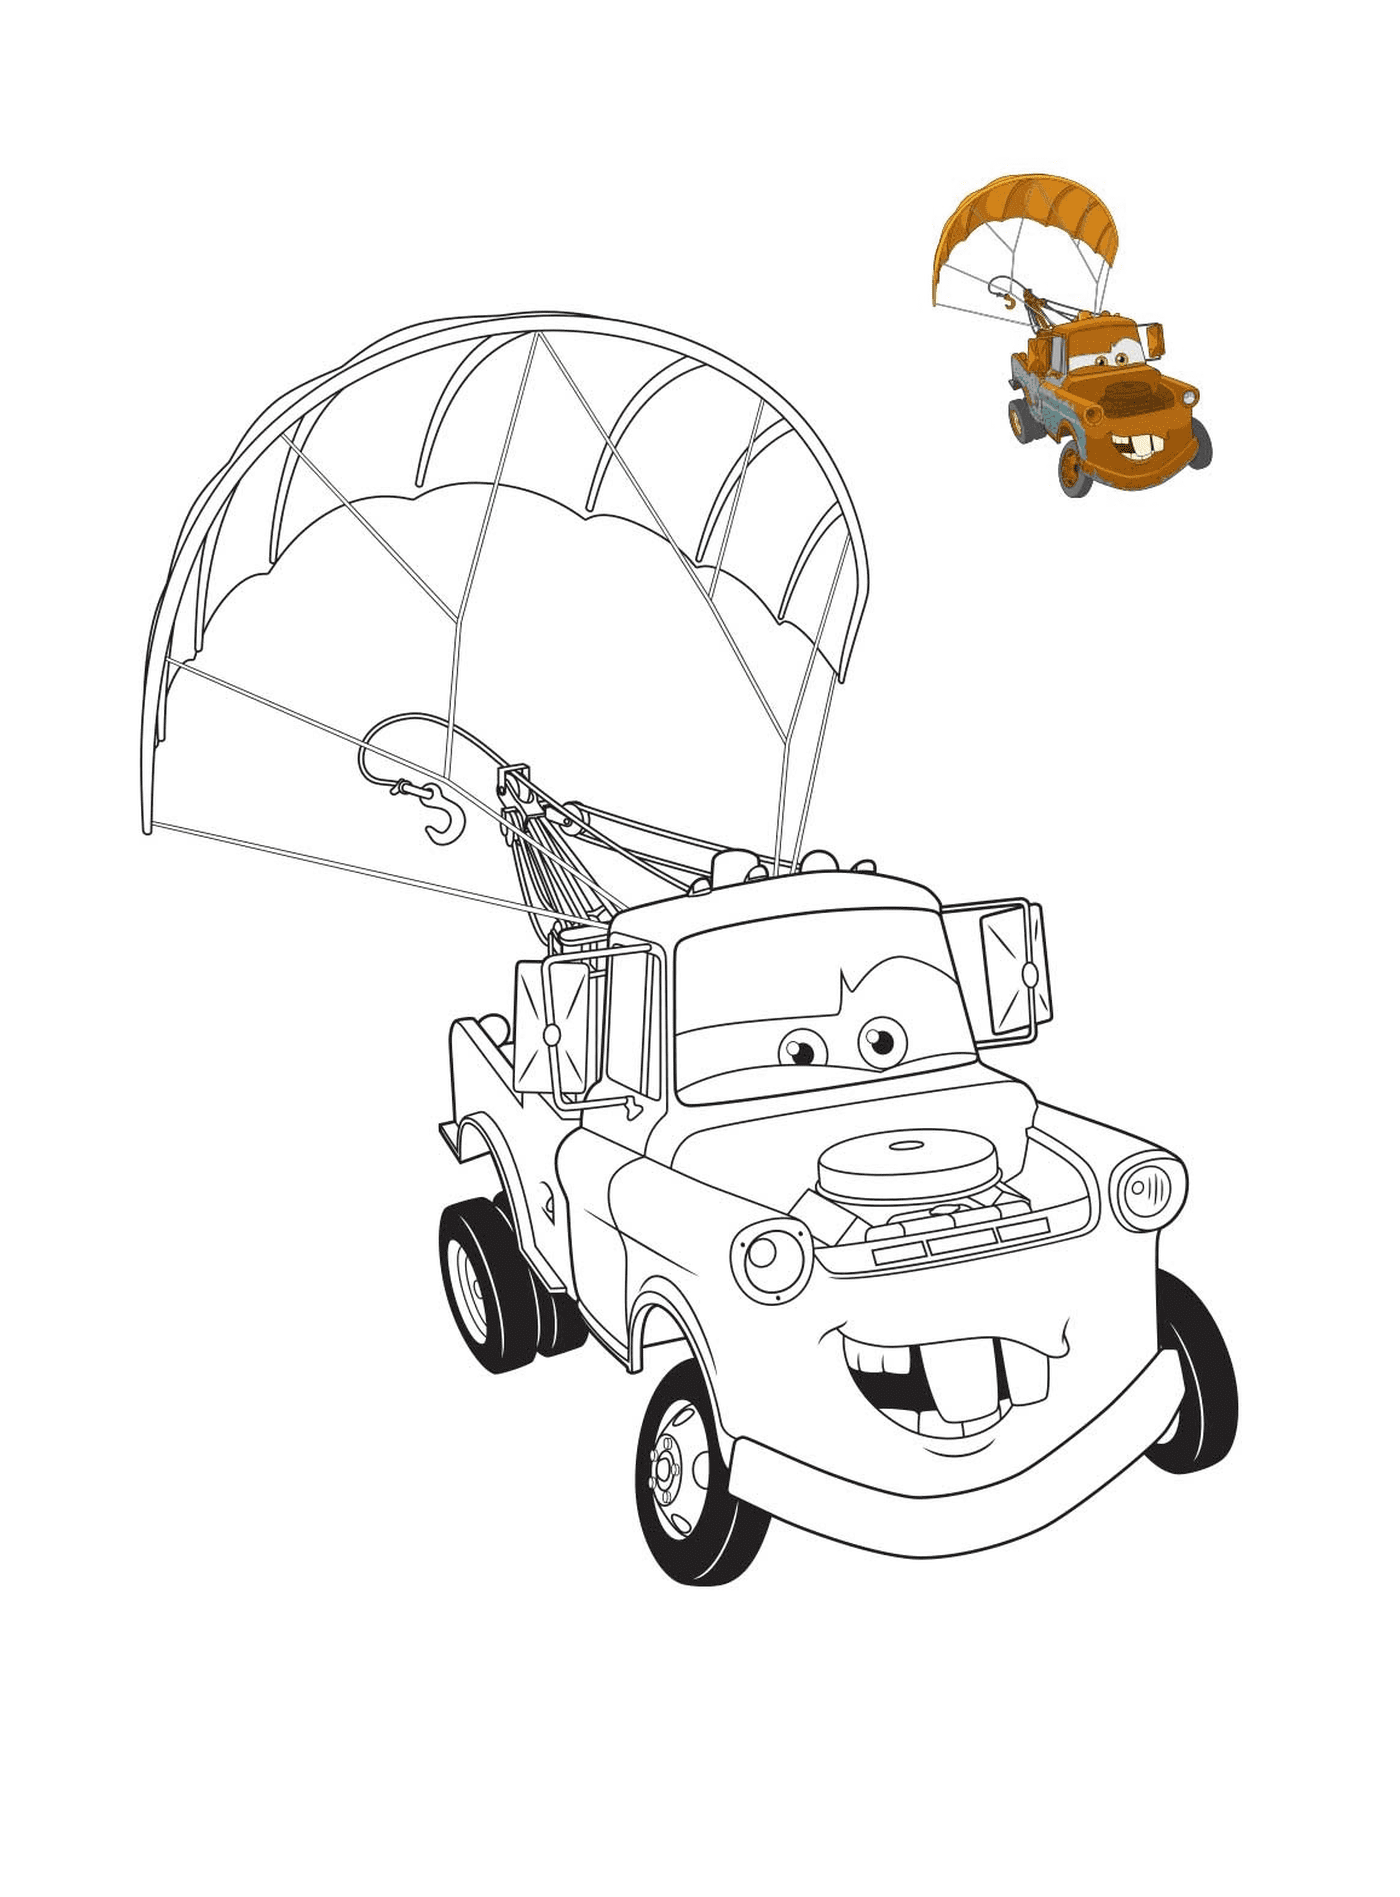  3号电影车 3号电影车 马丁 带彩色的拖车 带降落伞的拖车 